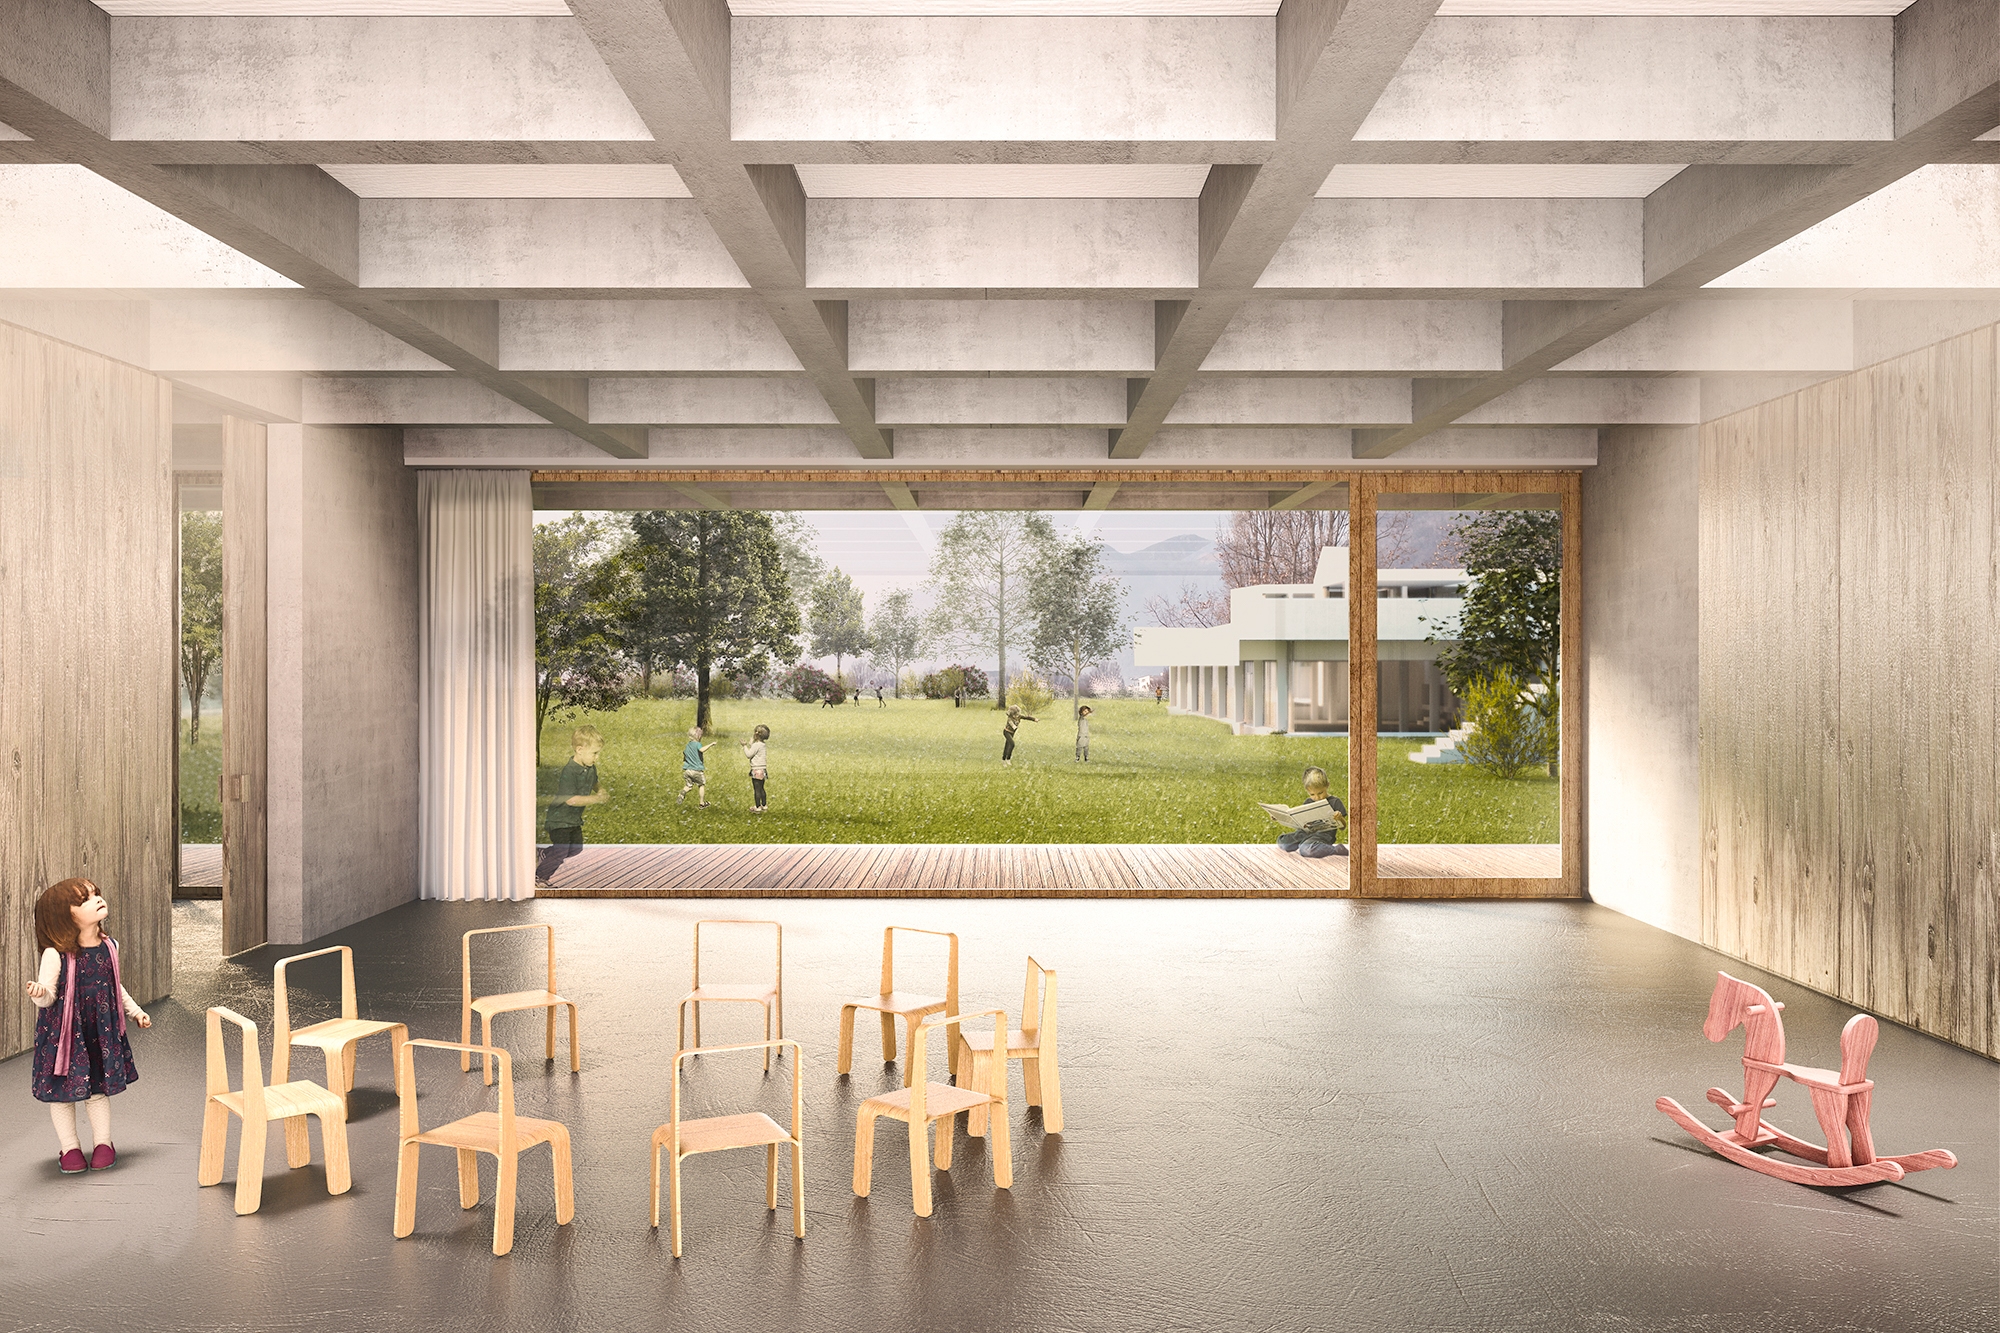 Nuova scuola dell'infanzia,ampliamento del progetto esistente dell'architetto Dolf Schnebli